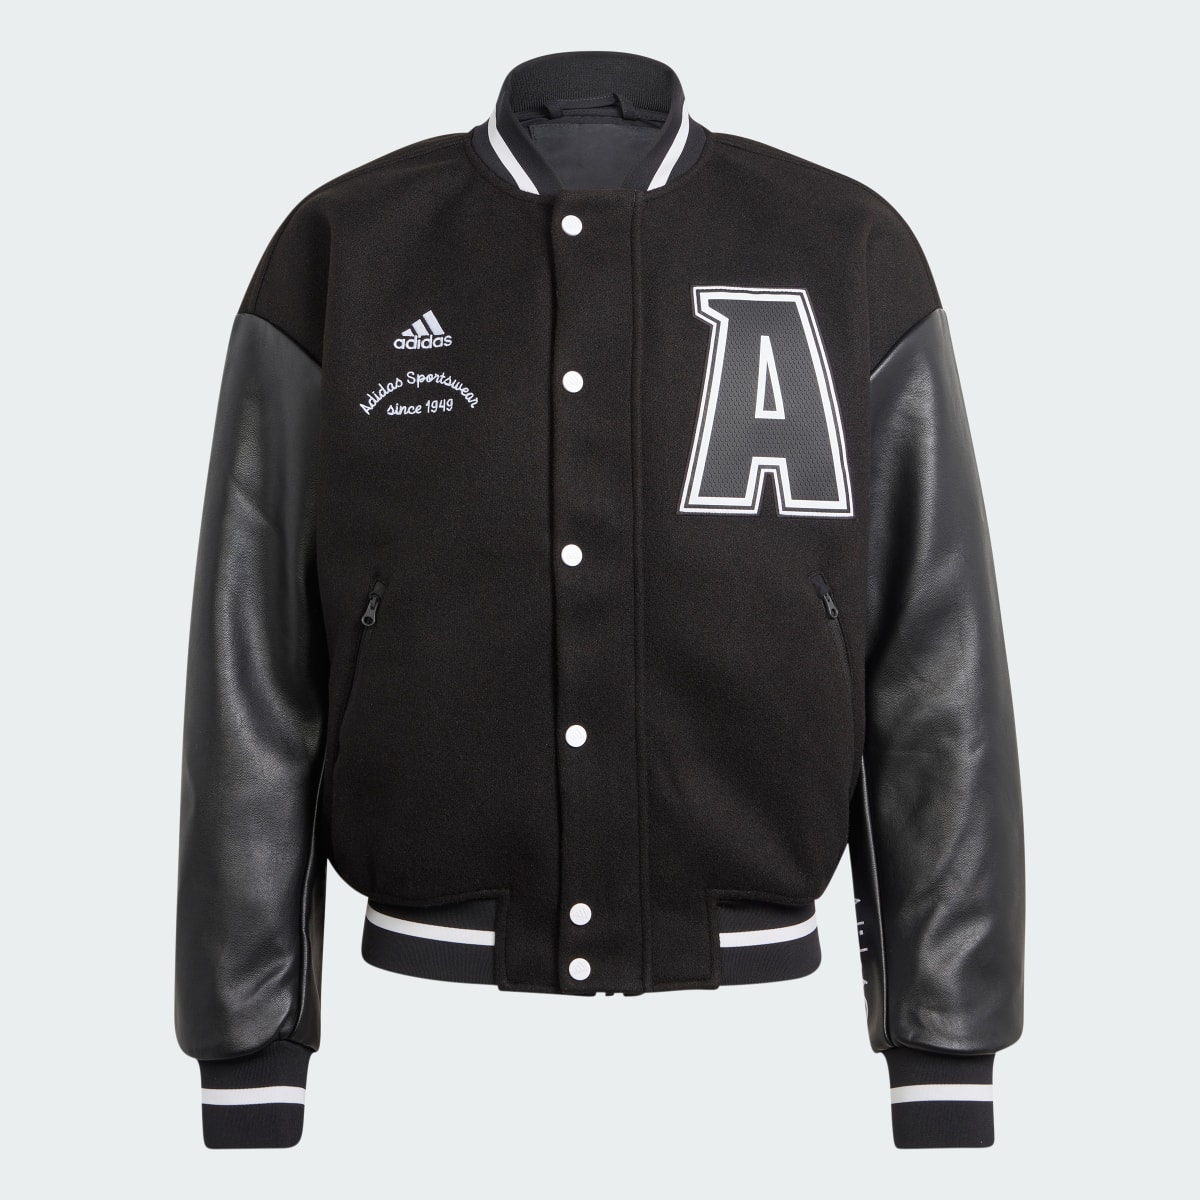 Adidas Collegiate Premium Jacke. 4